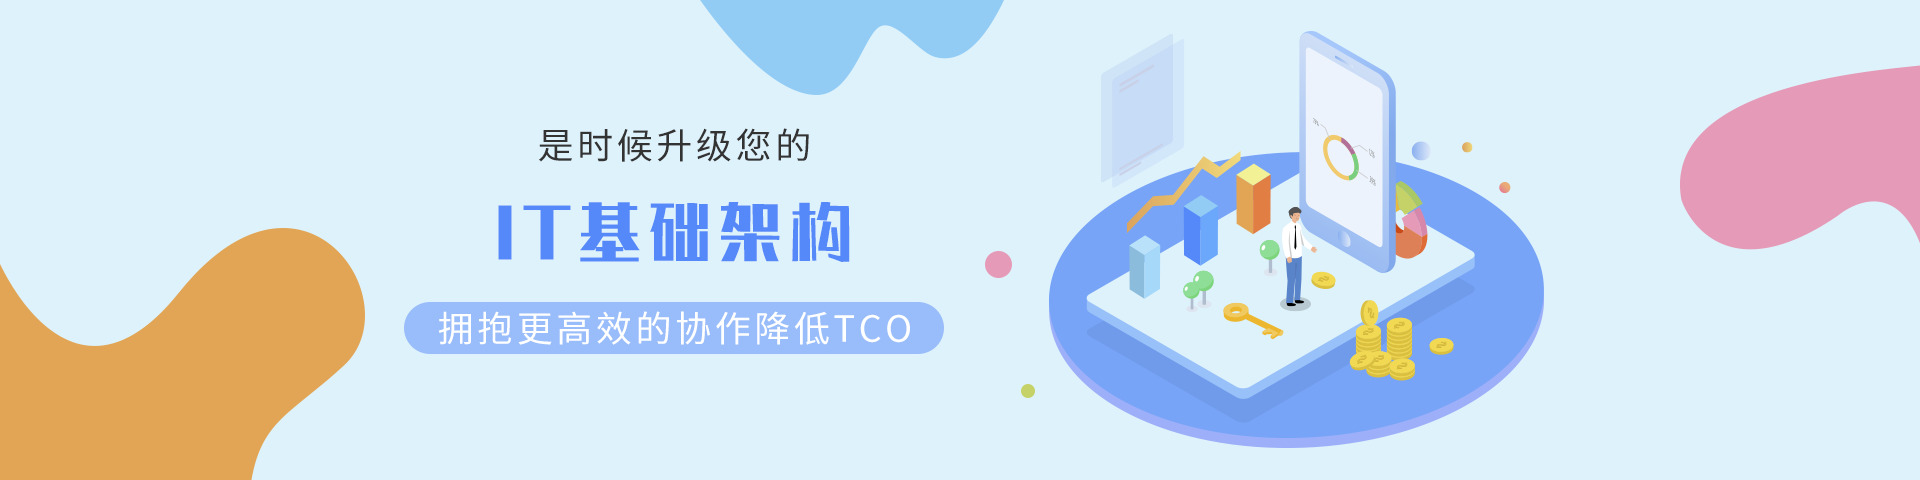 关于当前产品ag贵宾厅app·(中国)官方网站的成功案例等相关图片